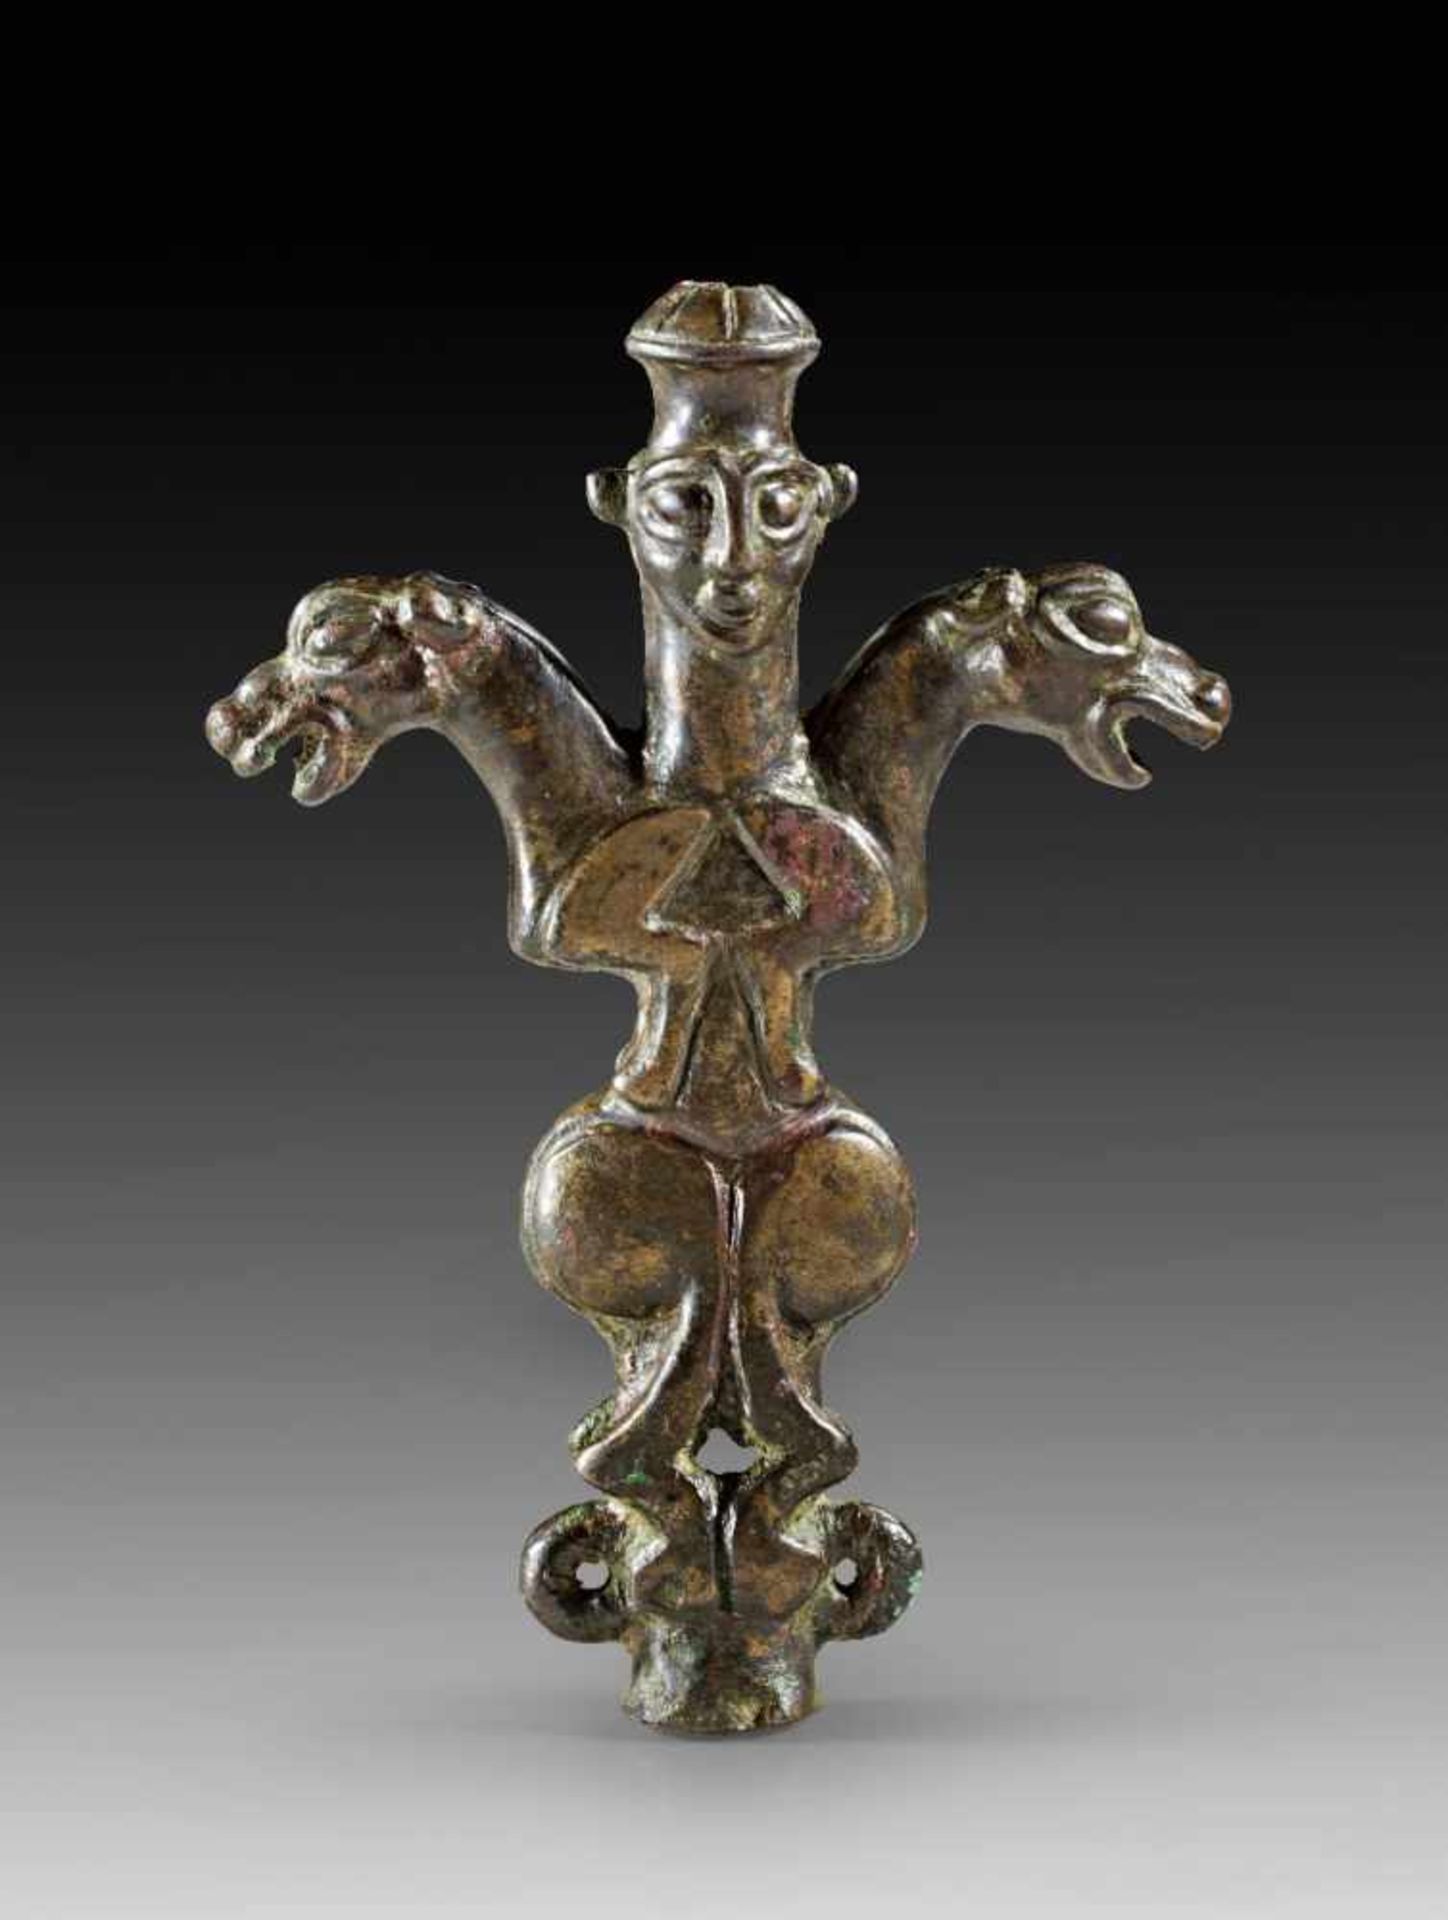 Standartenaufsatz. Luristan, 8. - 7. Jh. v. Chr. L 10cm. Bronze. Gedrungene Form mit einem